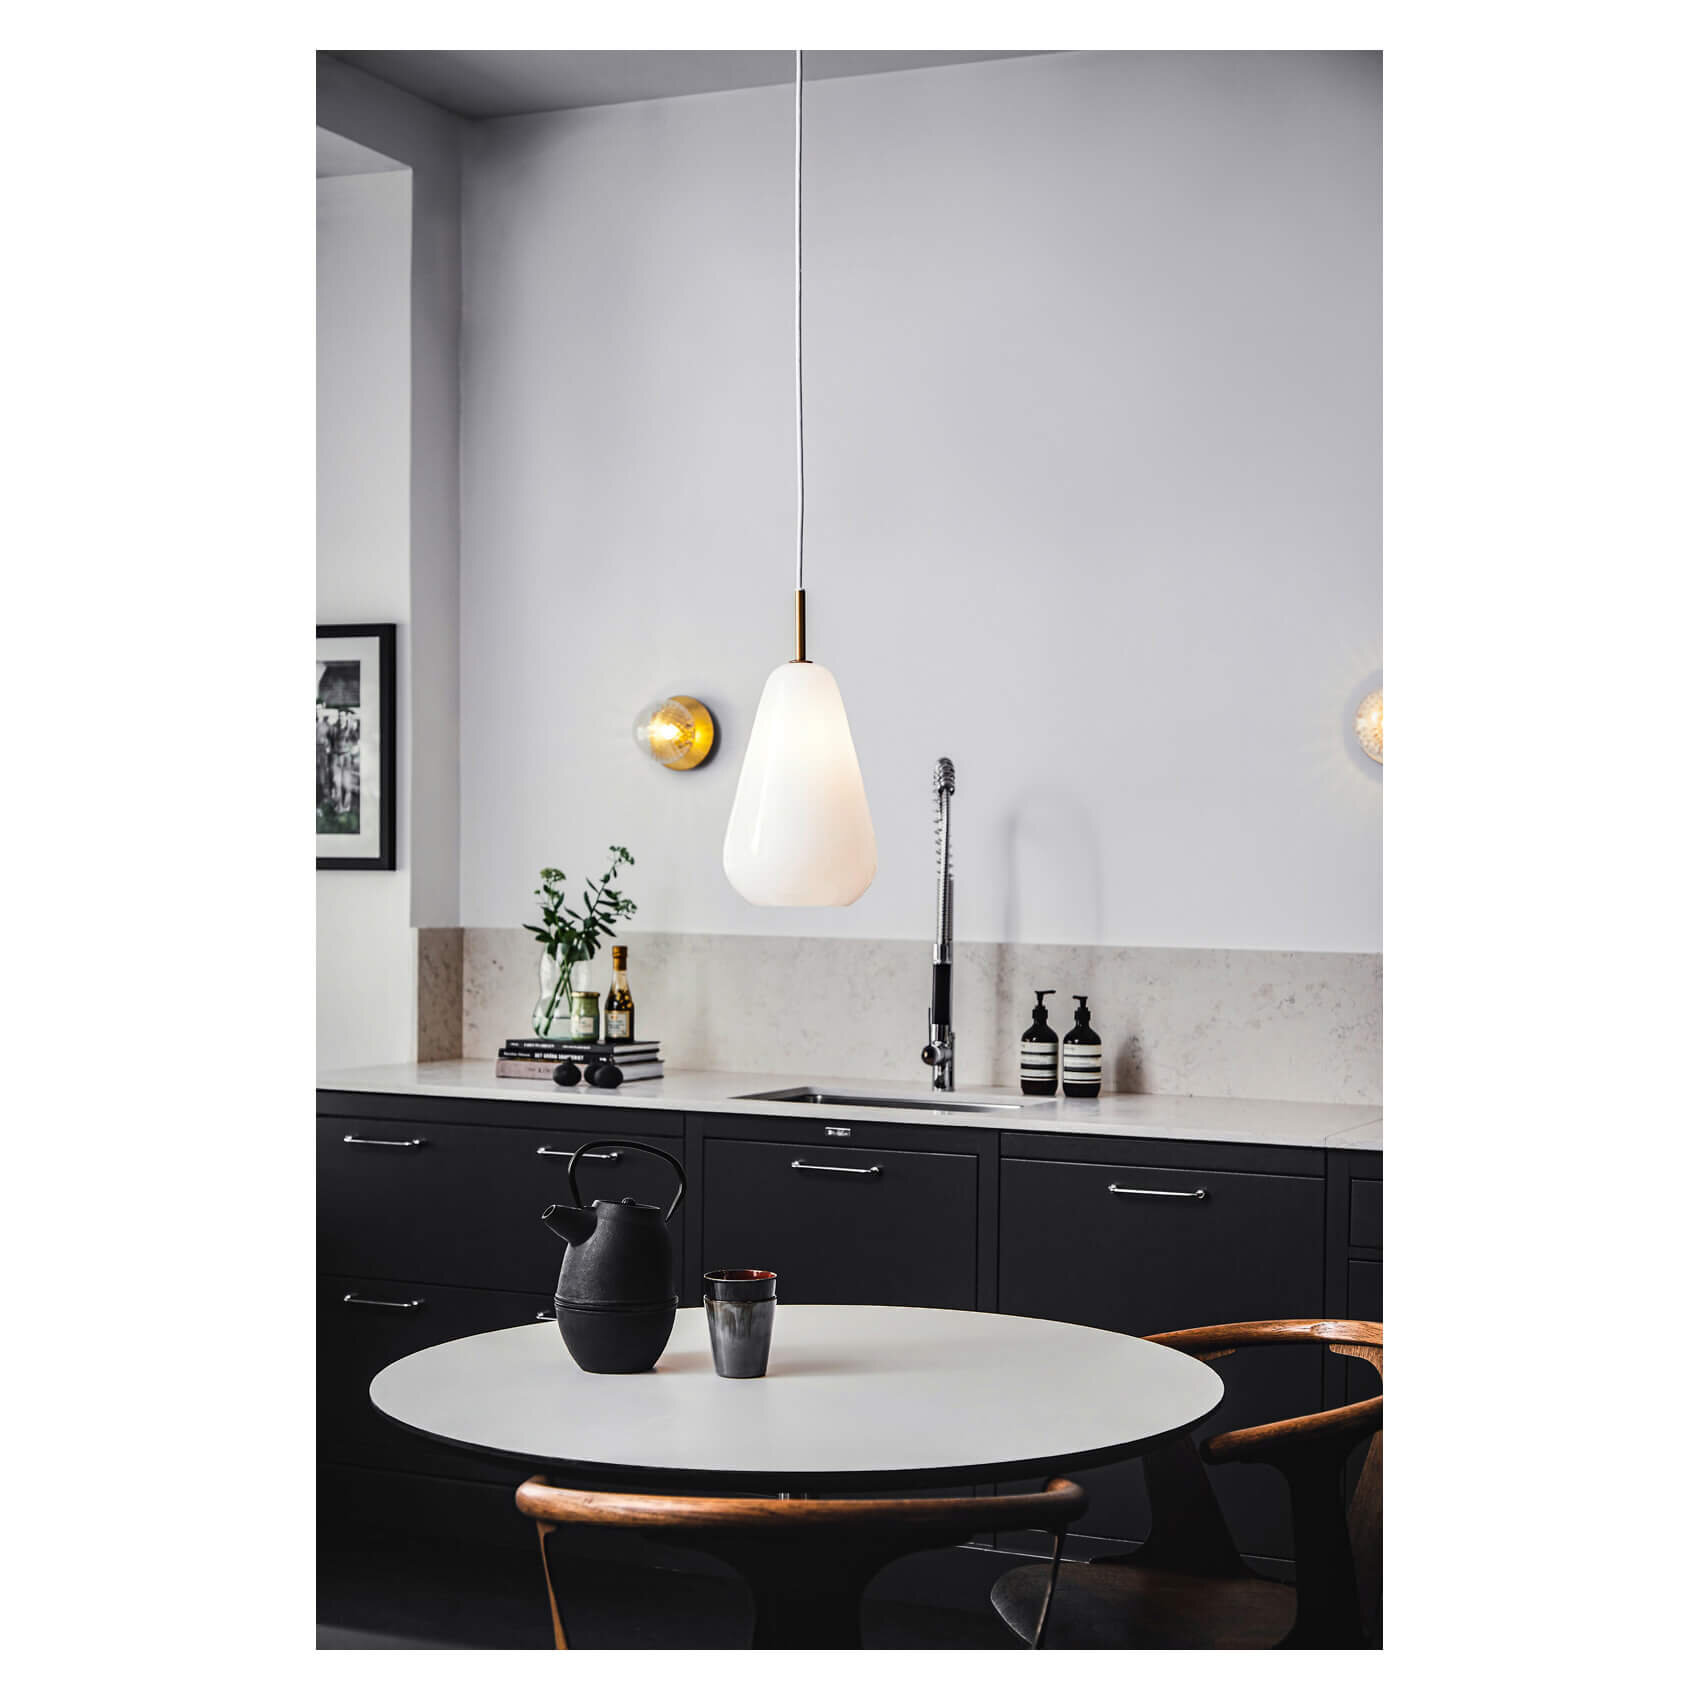 一盞北歐 Nuura Anoli 吊燈用於餐廳和廚房